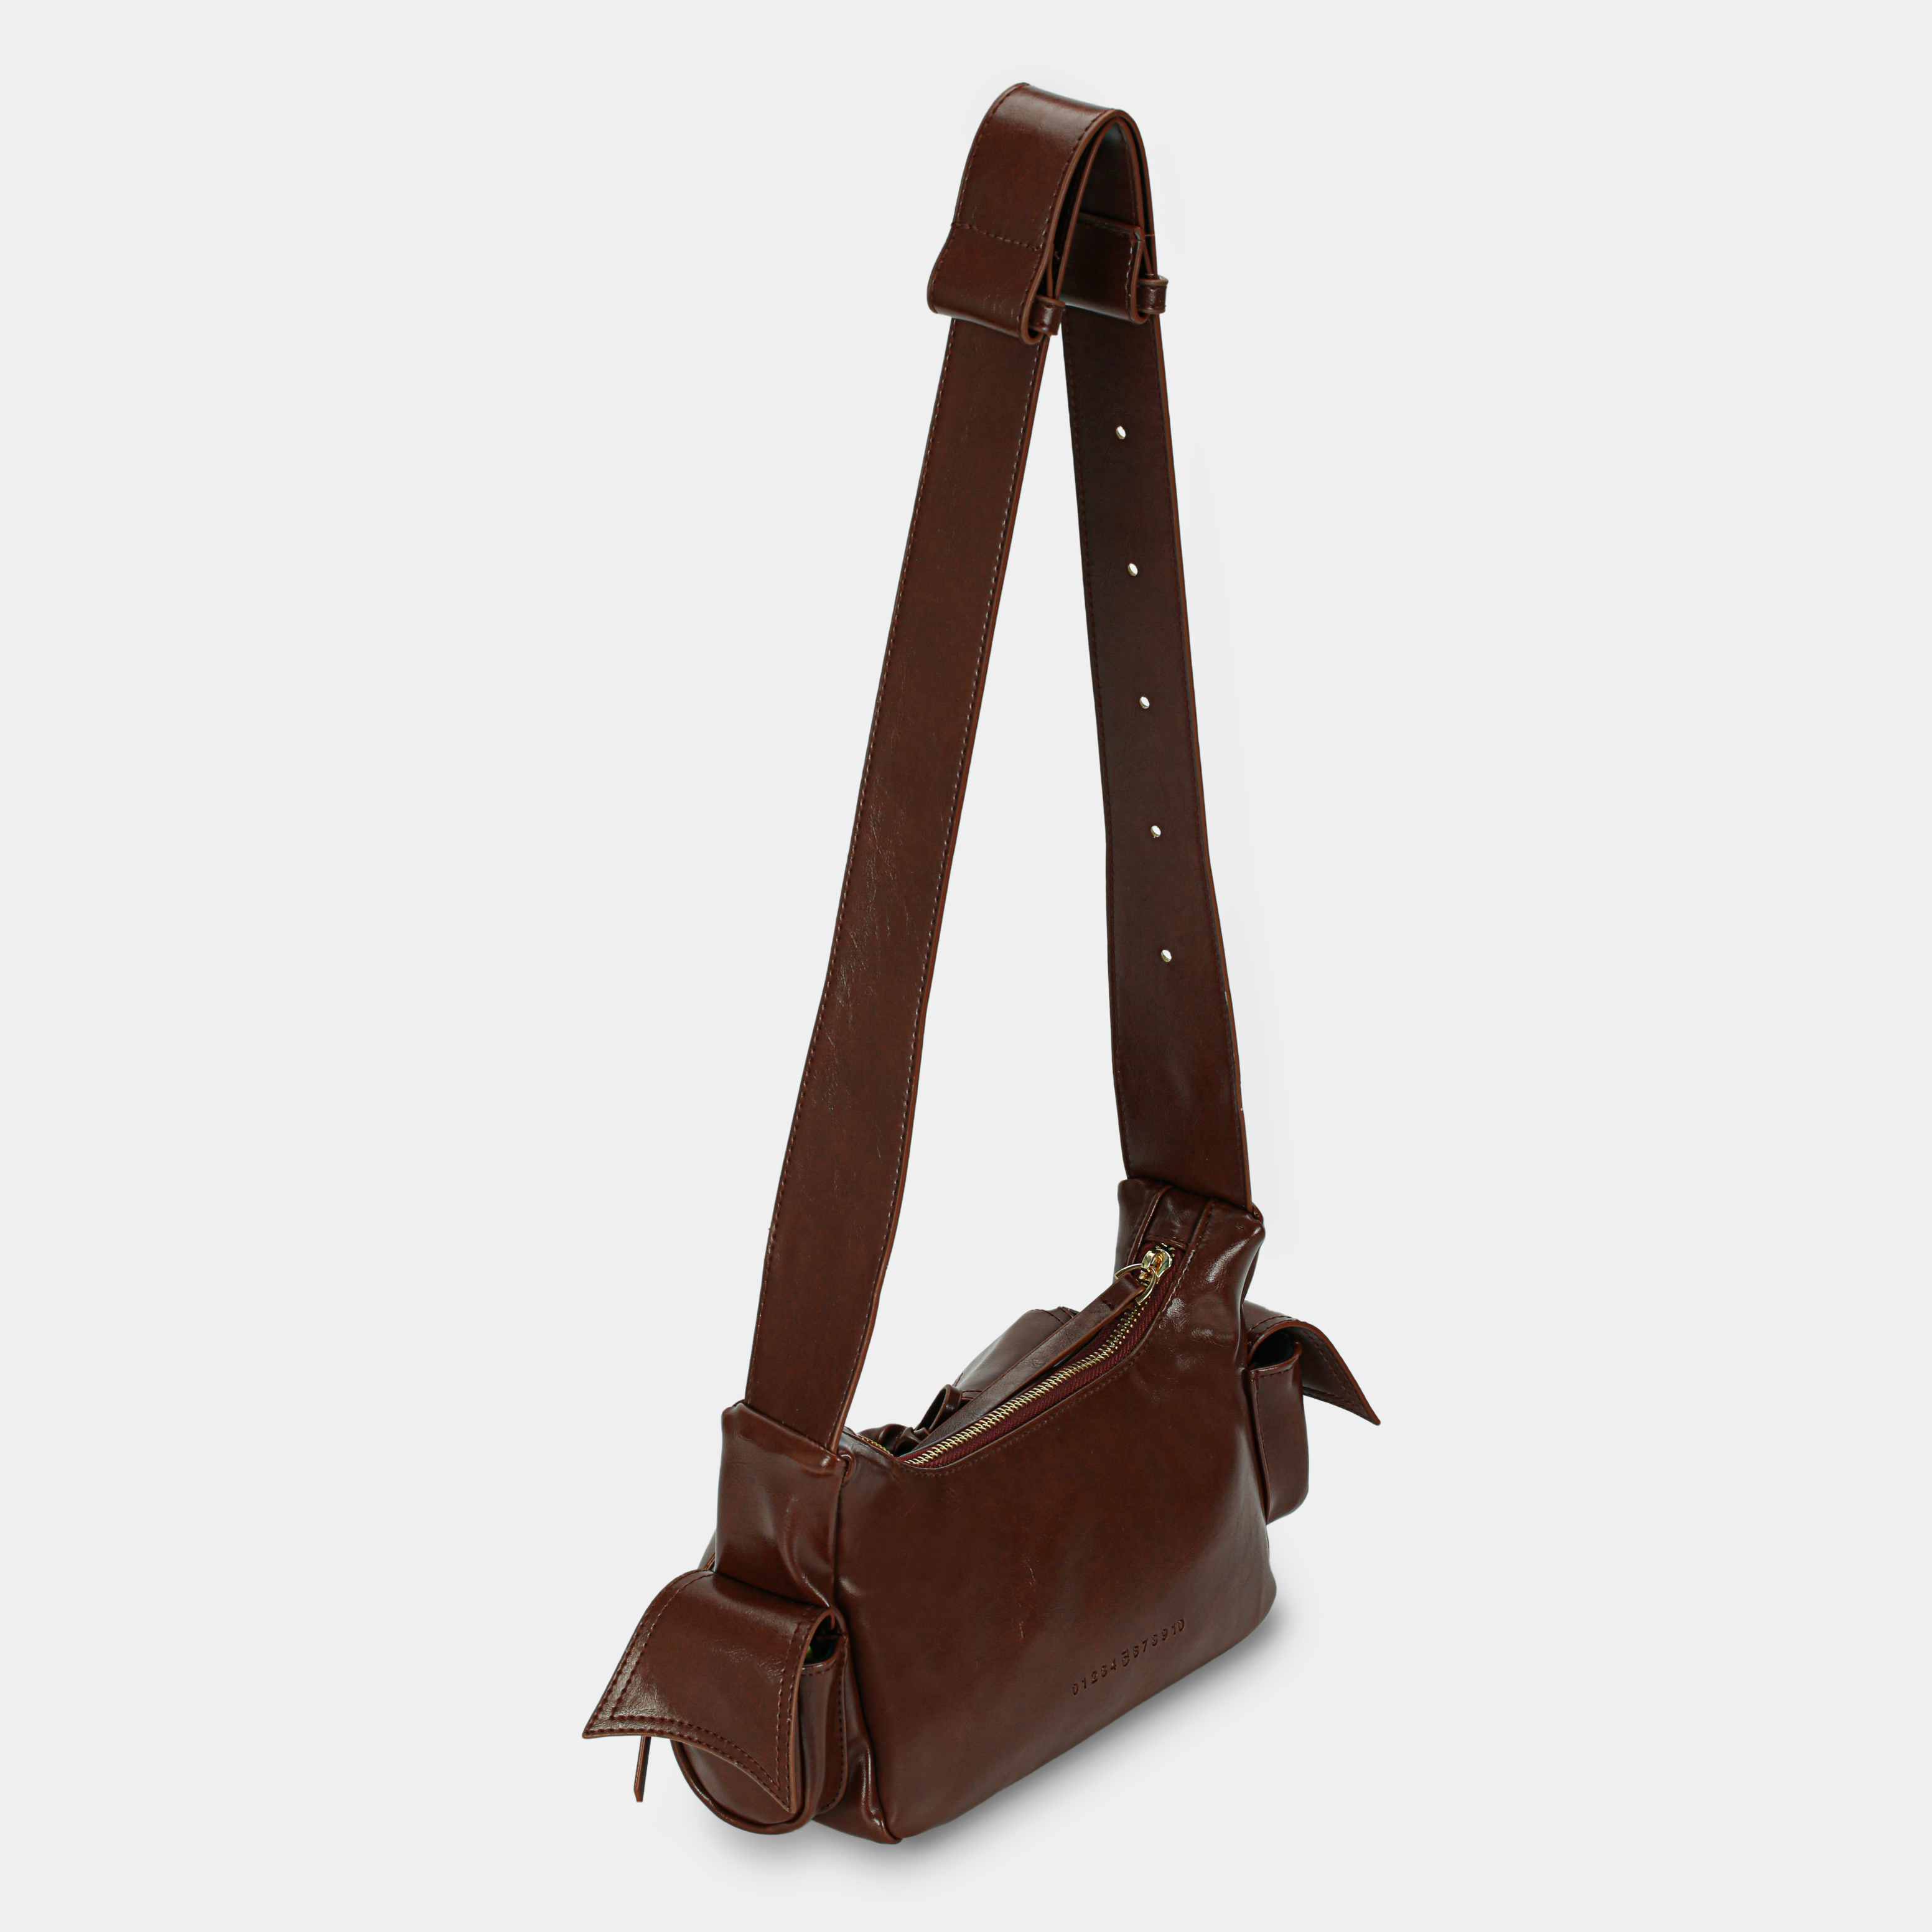 Túi xách C5-Pocket size nhỏ (S) màu nâu đậm